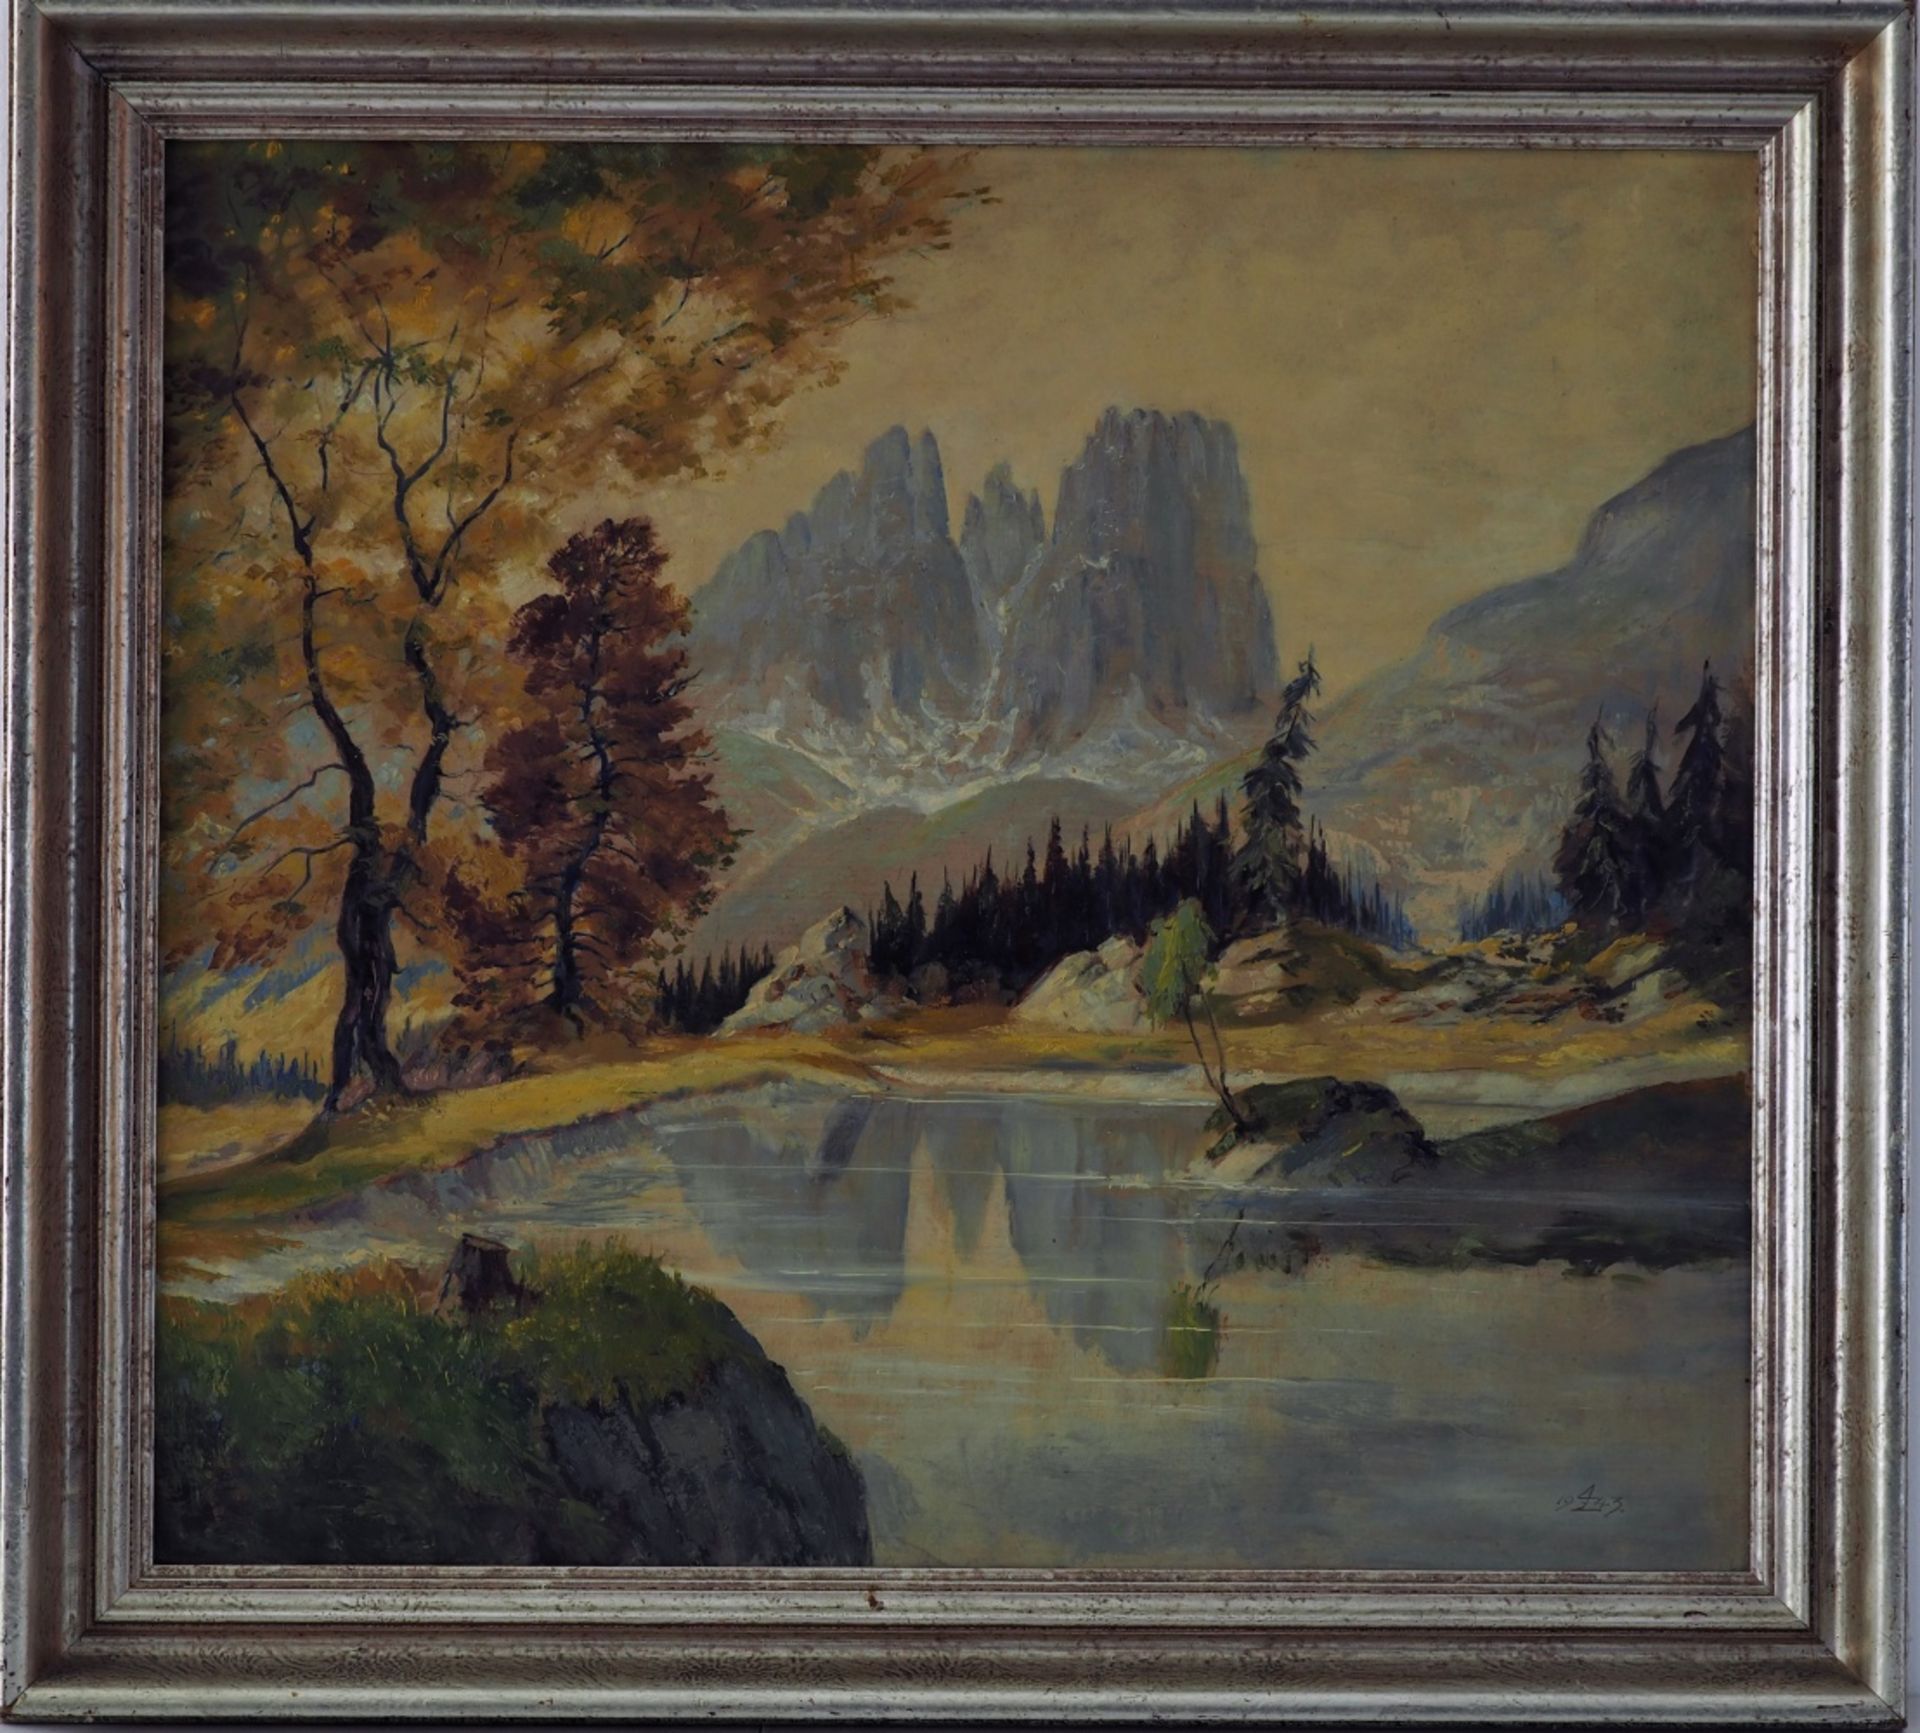 Landscape painting - Dolomites "Sasso Lungo", 1943